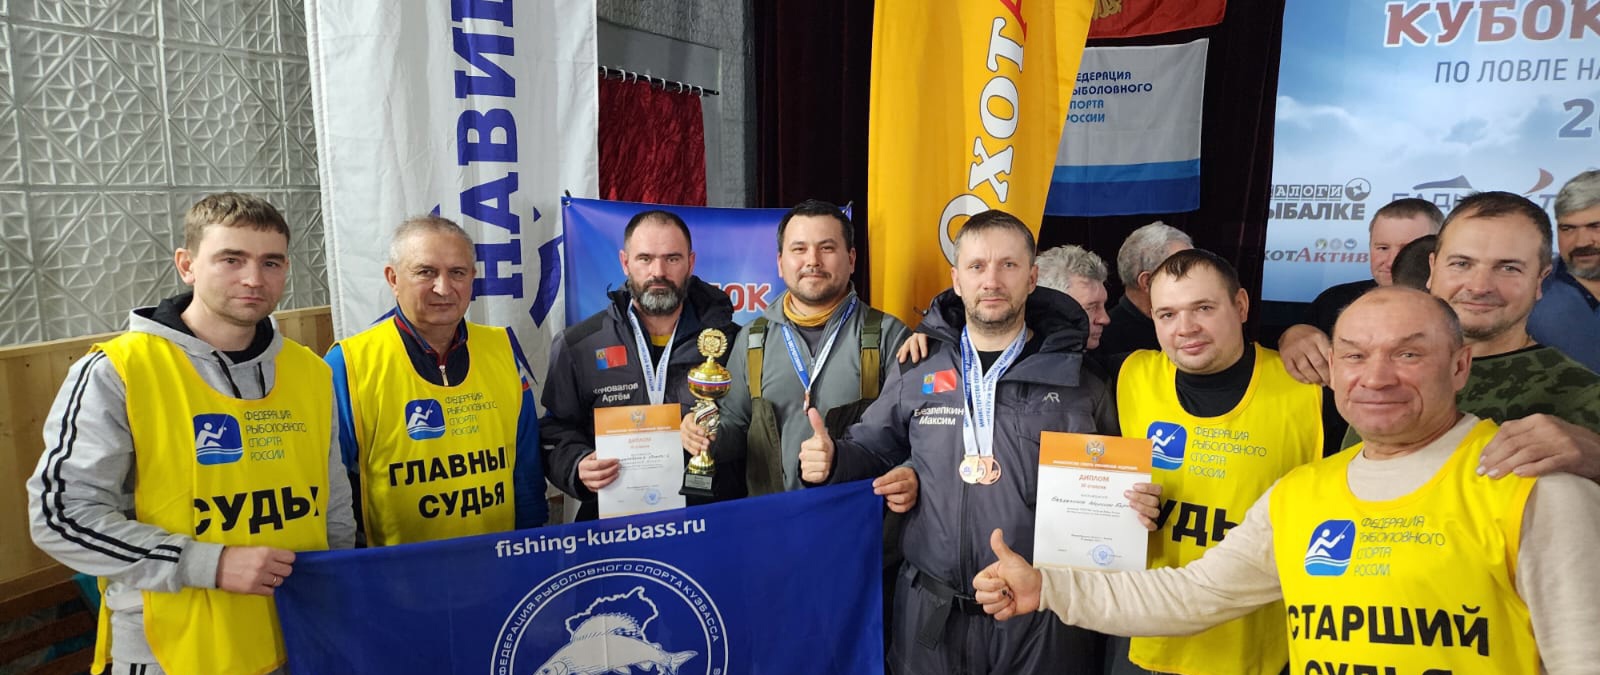 Кузбасские рыболовы взяли бронзу Кубка России